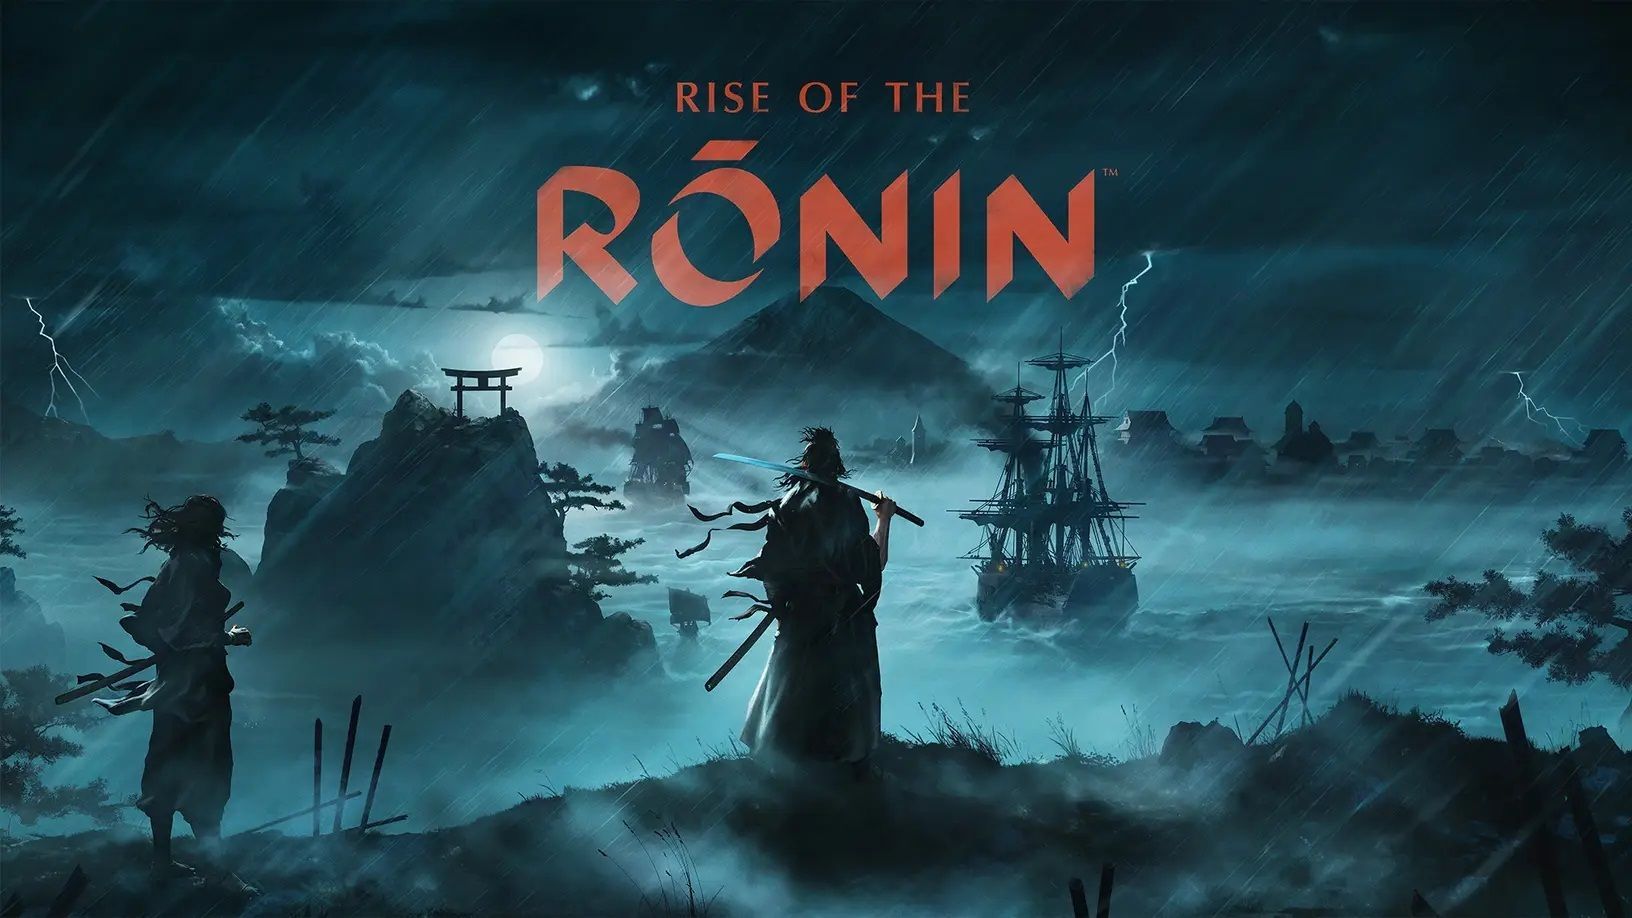 Rise of the Ronin Le jeu Nioh est lancé en mars dans une nouvelle bande-annonce